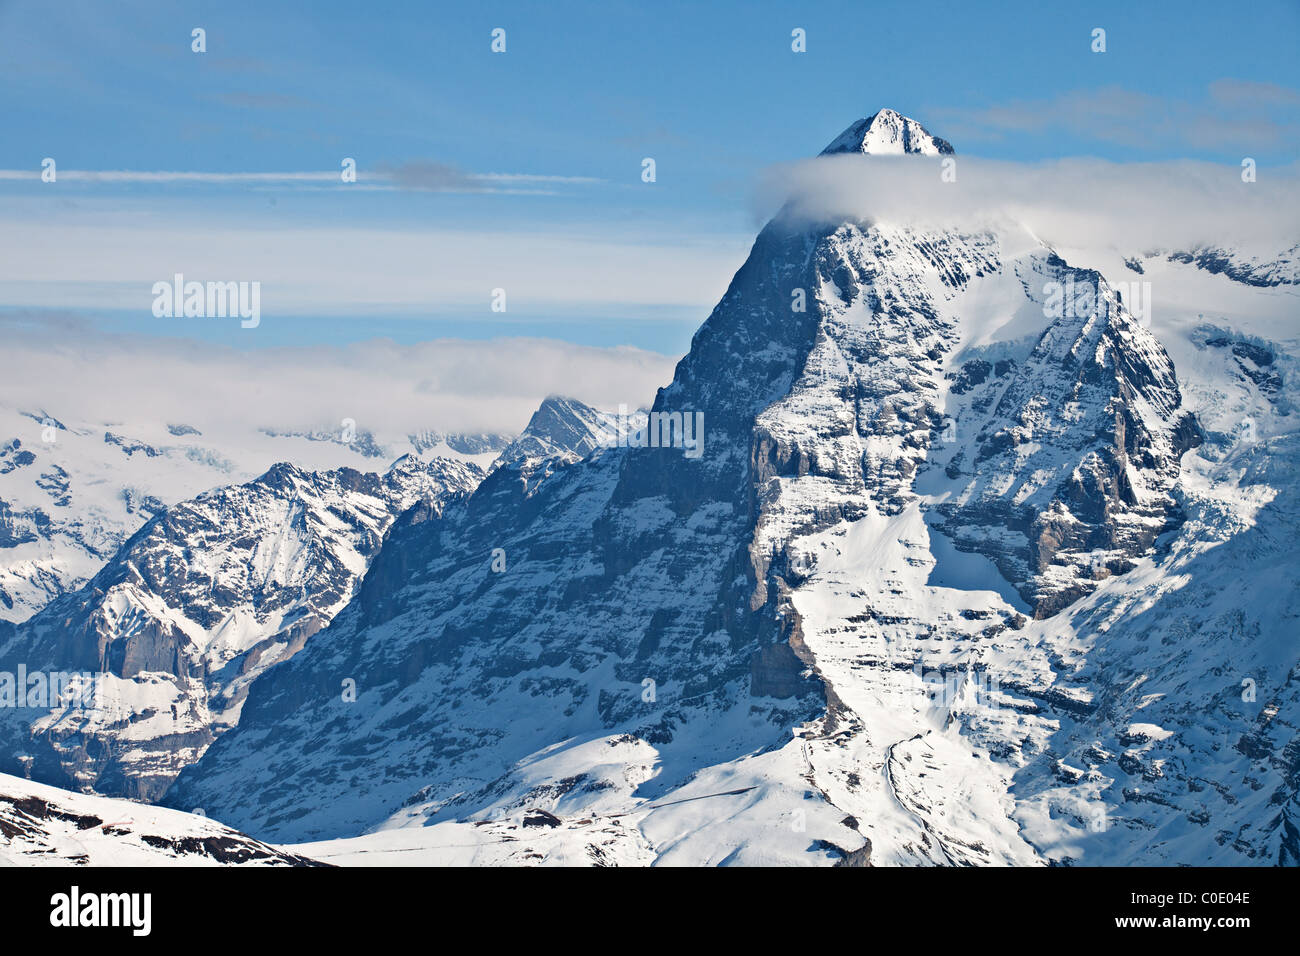 La parete nord dell'Eiger, Oberland bernese, alpi svizzere, Svizzera Foto Stock